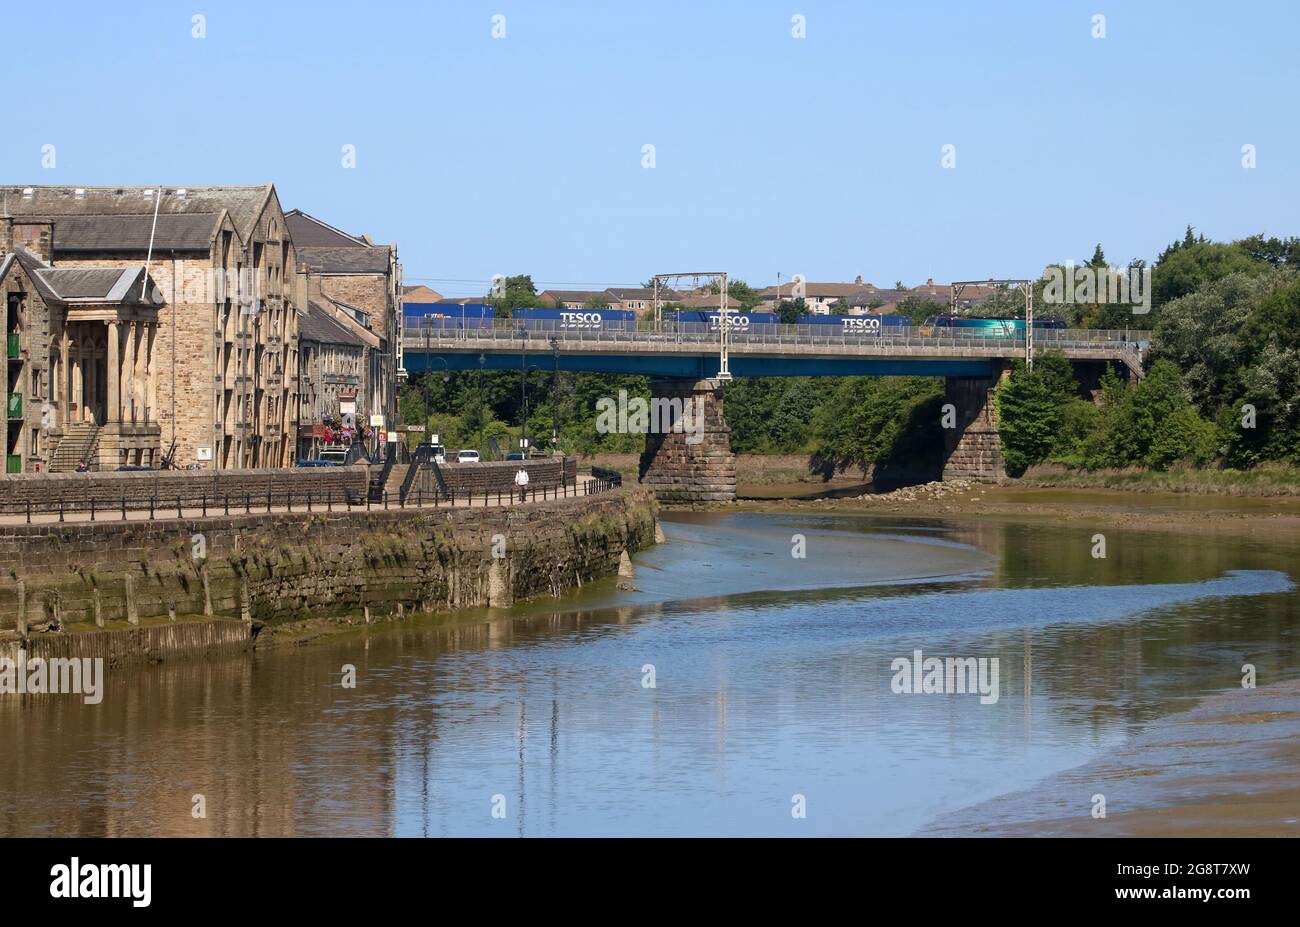 Blick auf den Fluss Lune in Lancaster, vorbei am St. George's Quay, zur Carlisle Bridge mit dem Containerzug auf der West Coast Main Line, 17. Juli 2021. Stockfoto